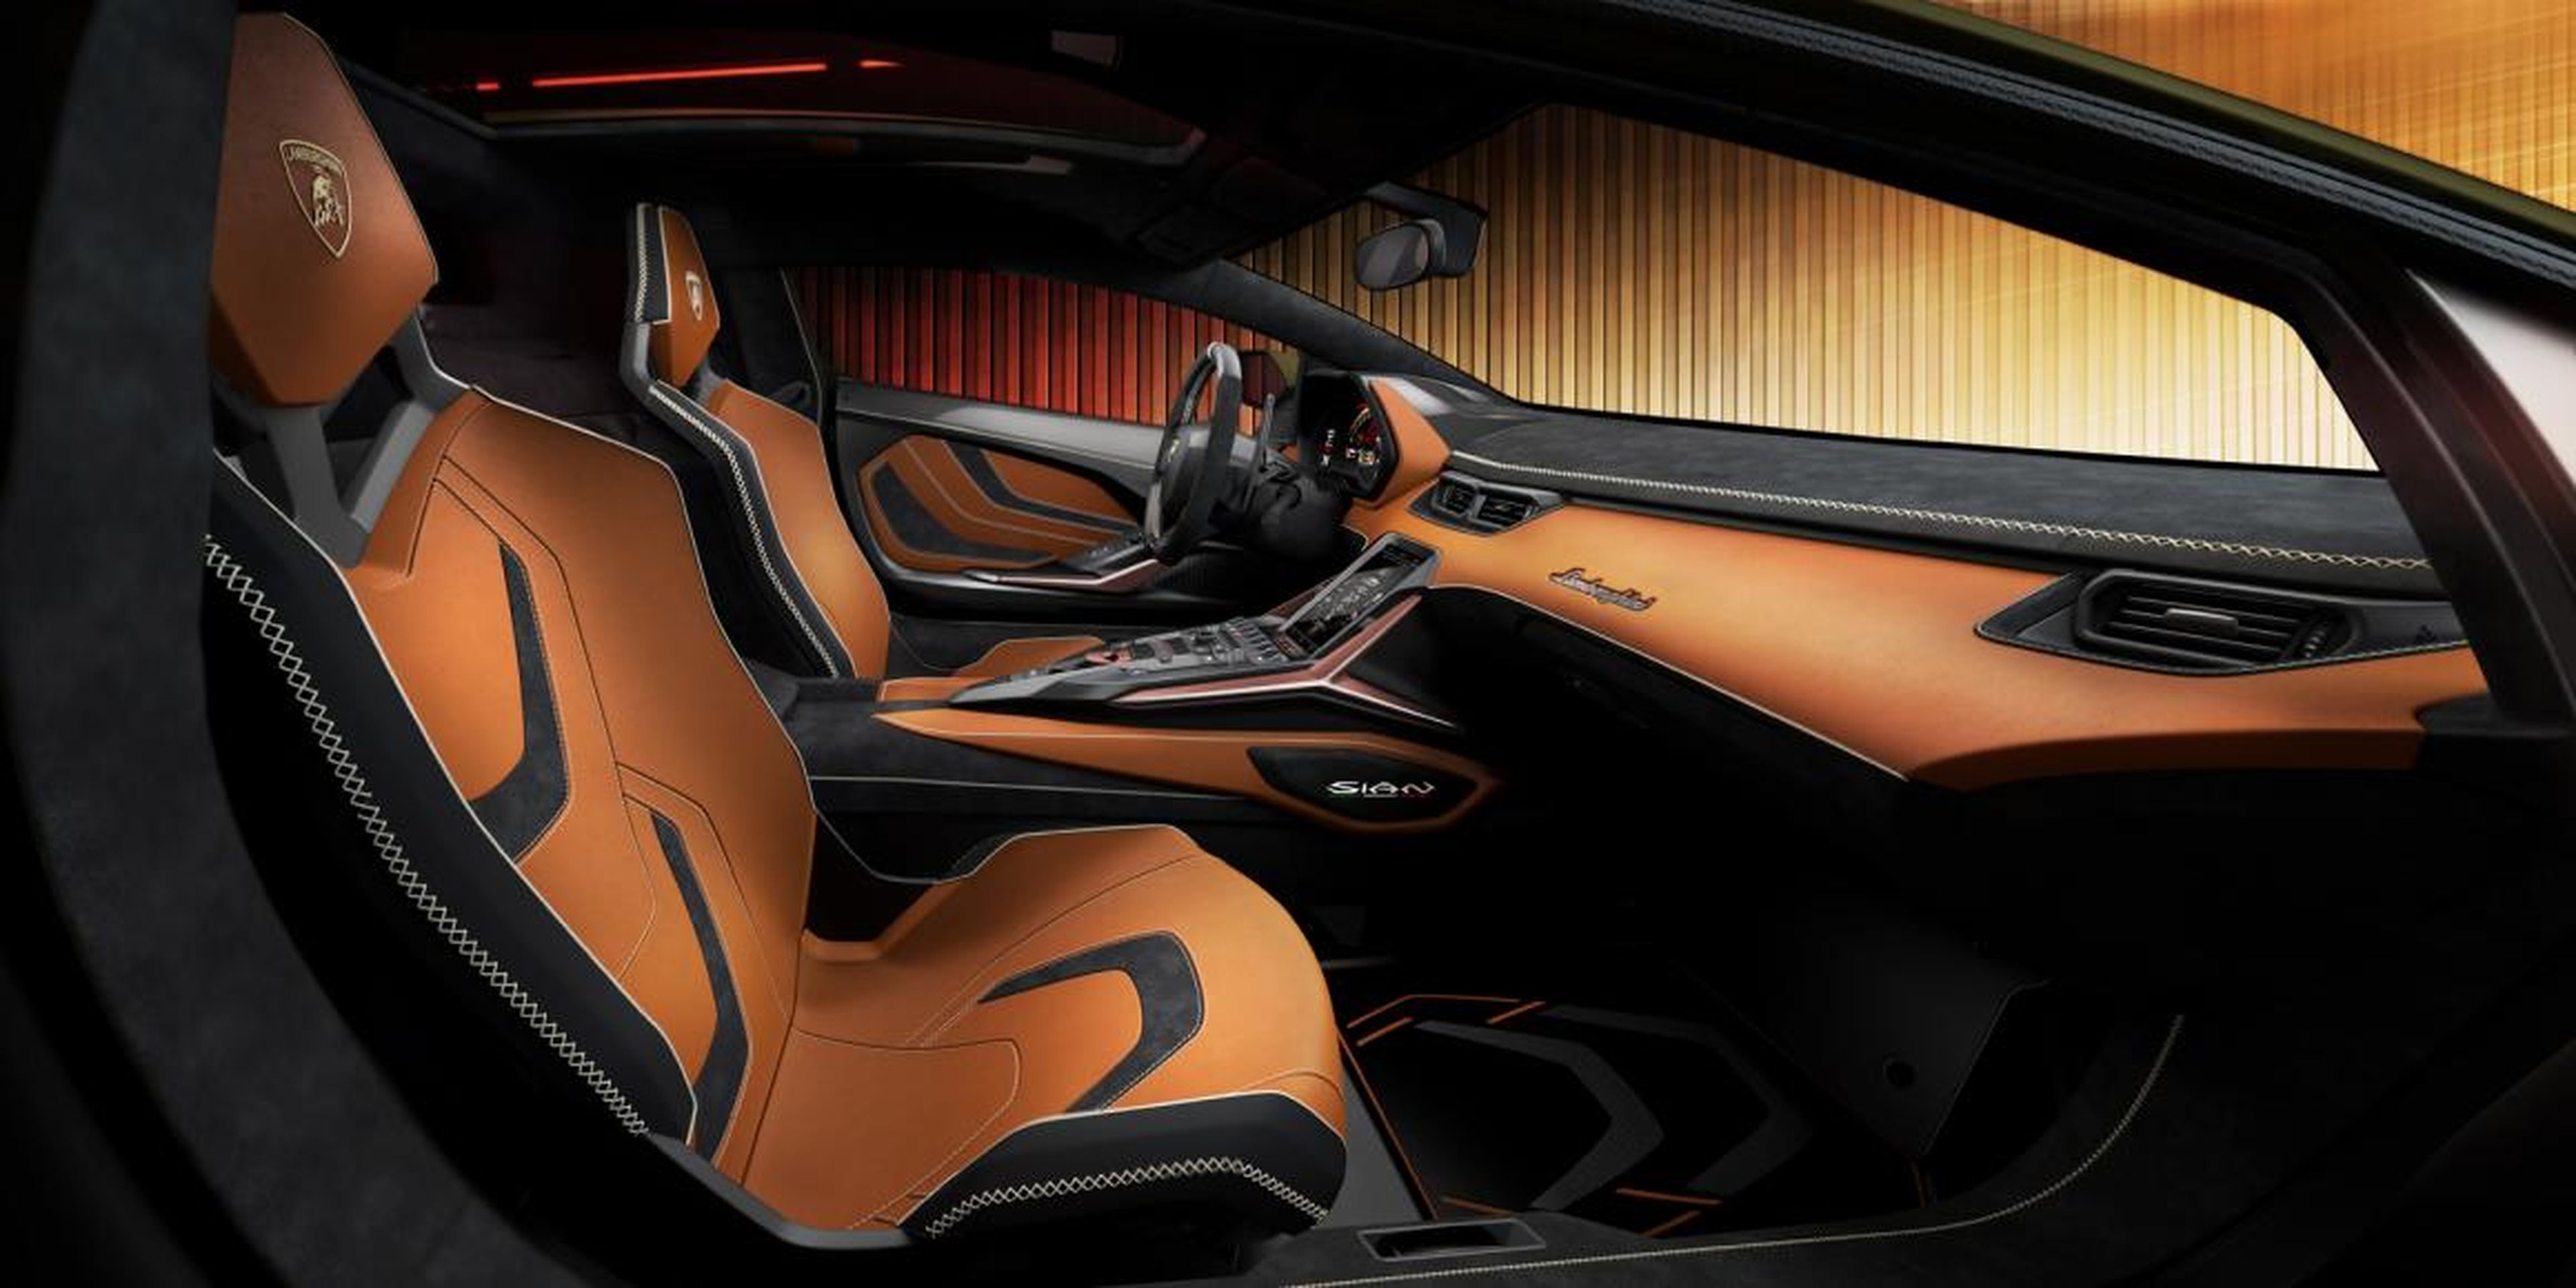 Serán individualmente personalizados y estilizados por el propietario a través del estudio y programa del fabricante, Lamborghini Centro Stile and Lamborghini Ad Personam.